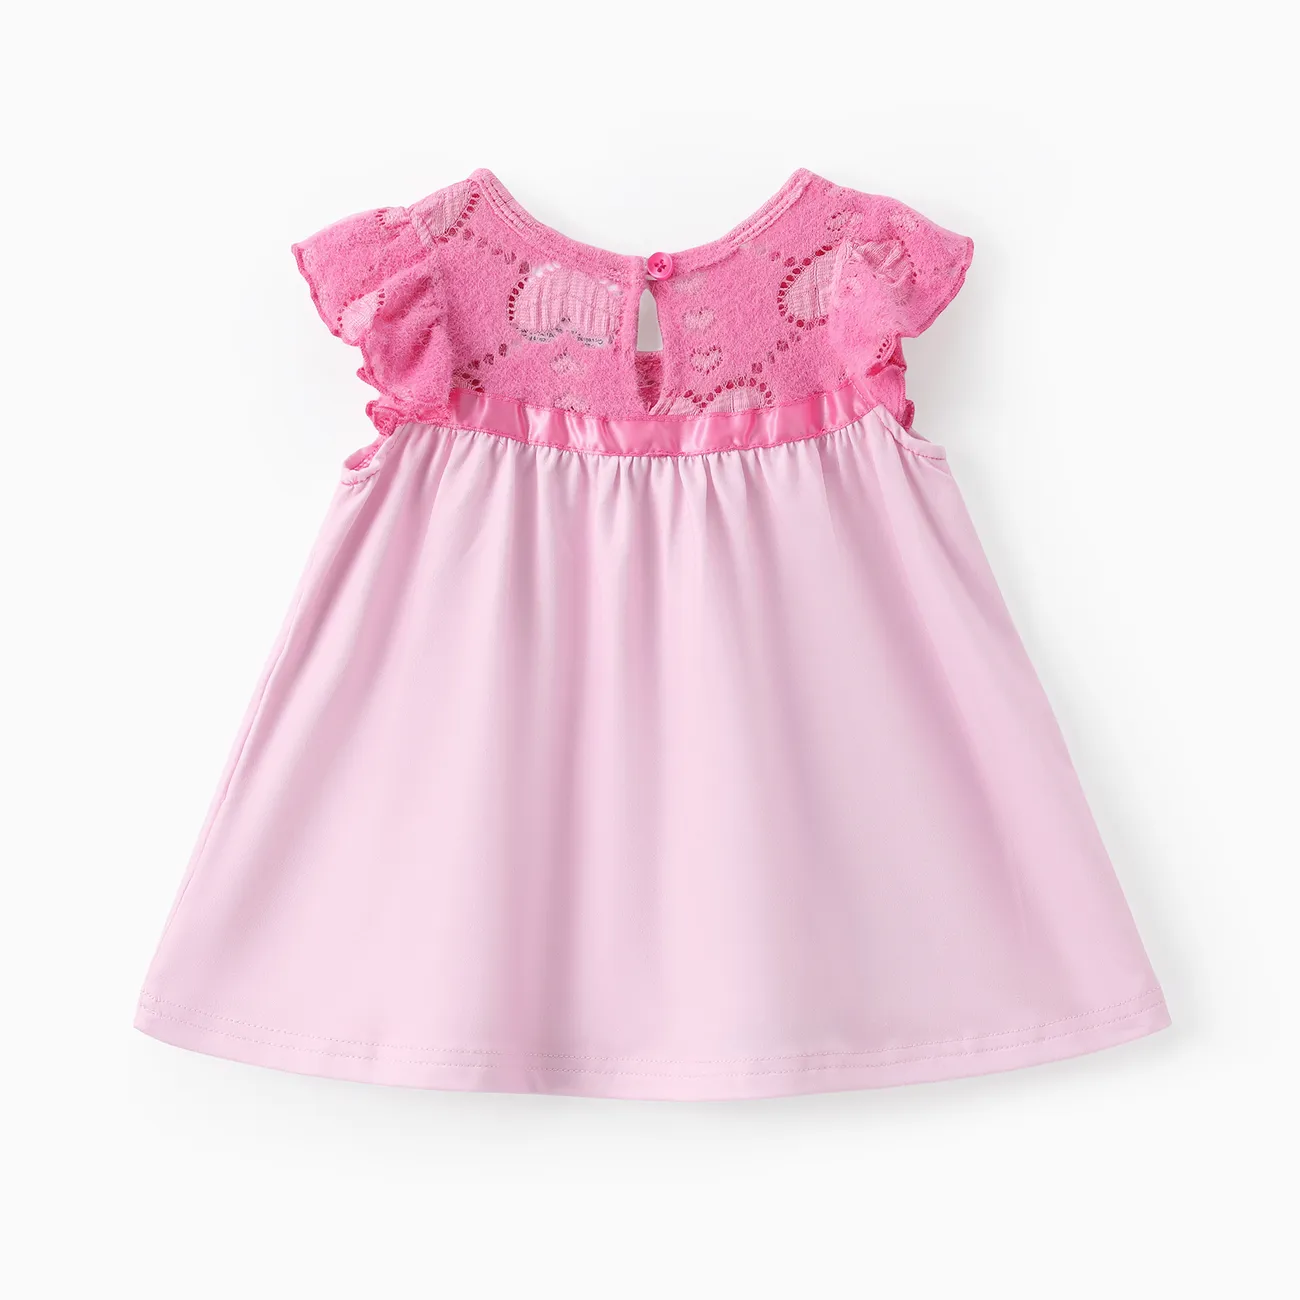 Les Bisounours Bébé Couture de tissus Enfantin Manches courtes Robe Rose big image 1